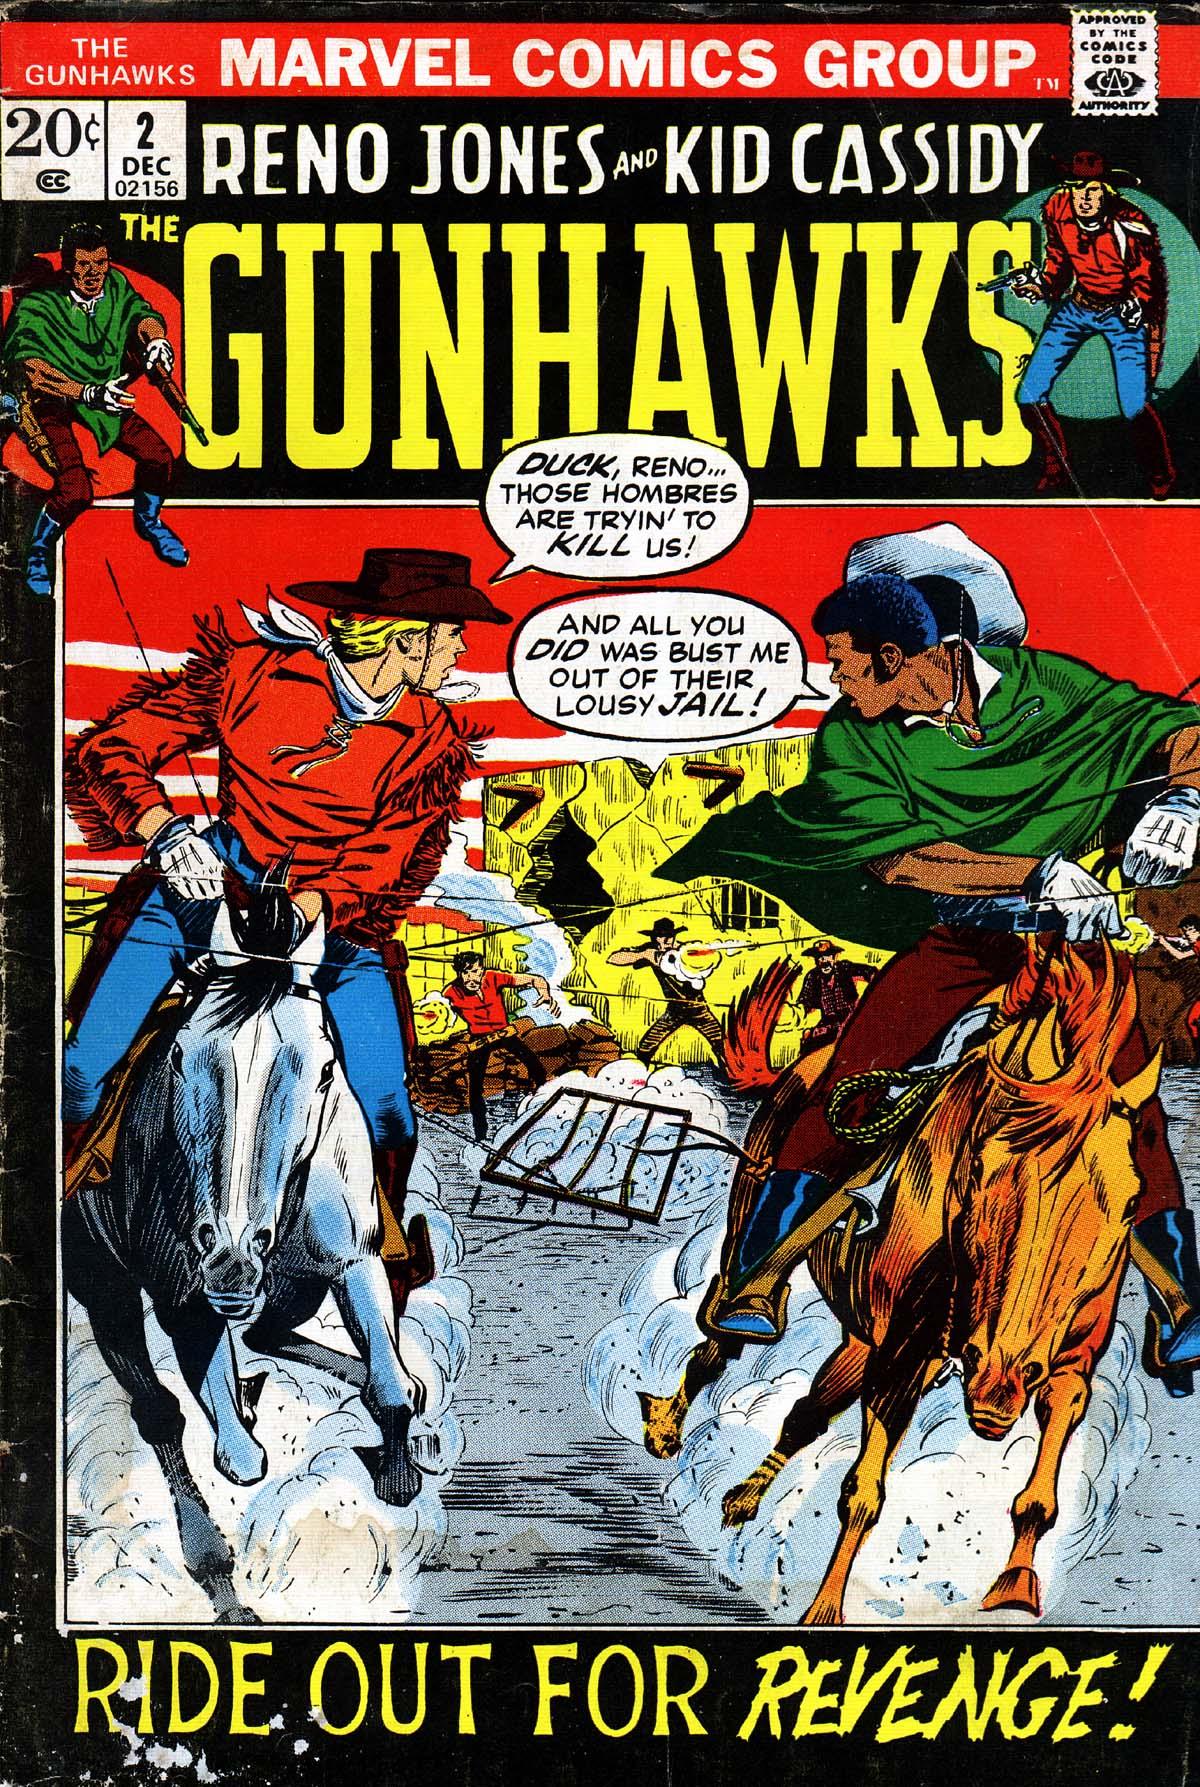 The Gunhawks Vol. 1 #2